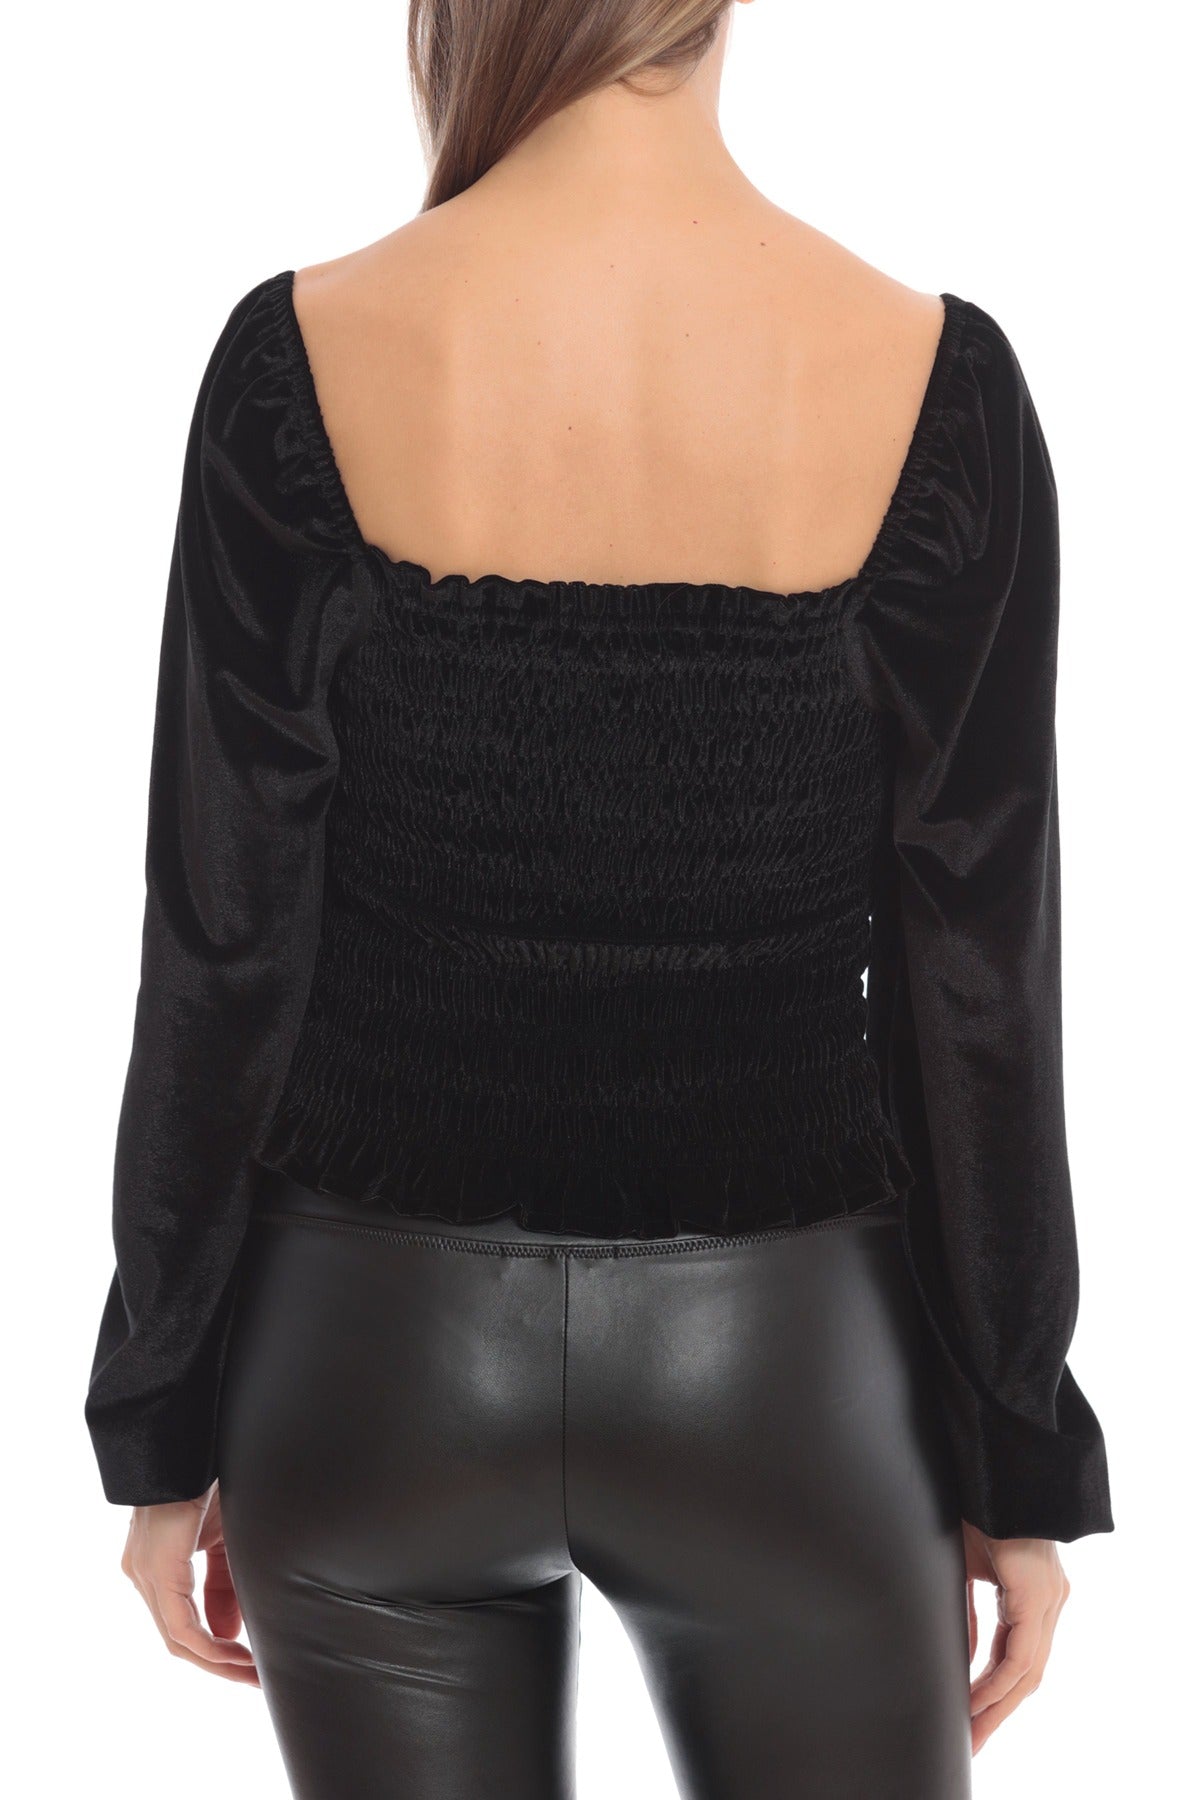 Black smocked velvet prairie blouse dressy top - women's figure flattering date night tops